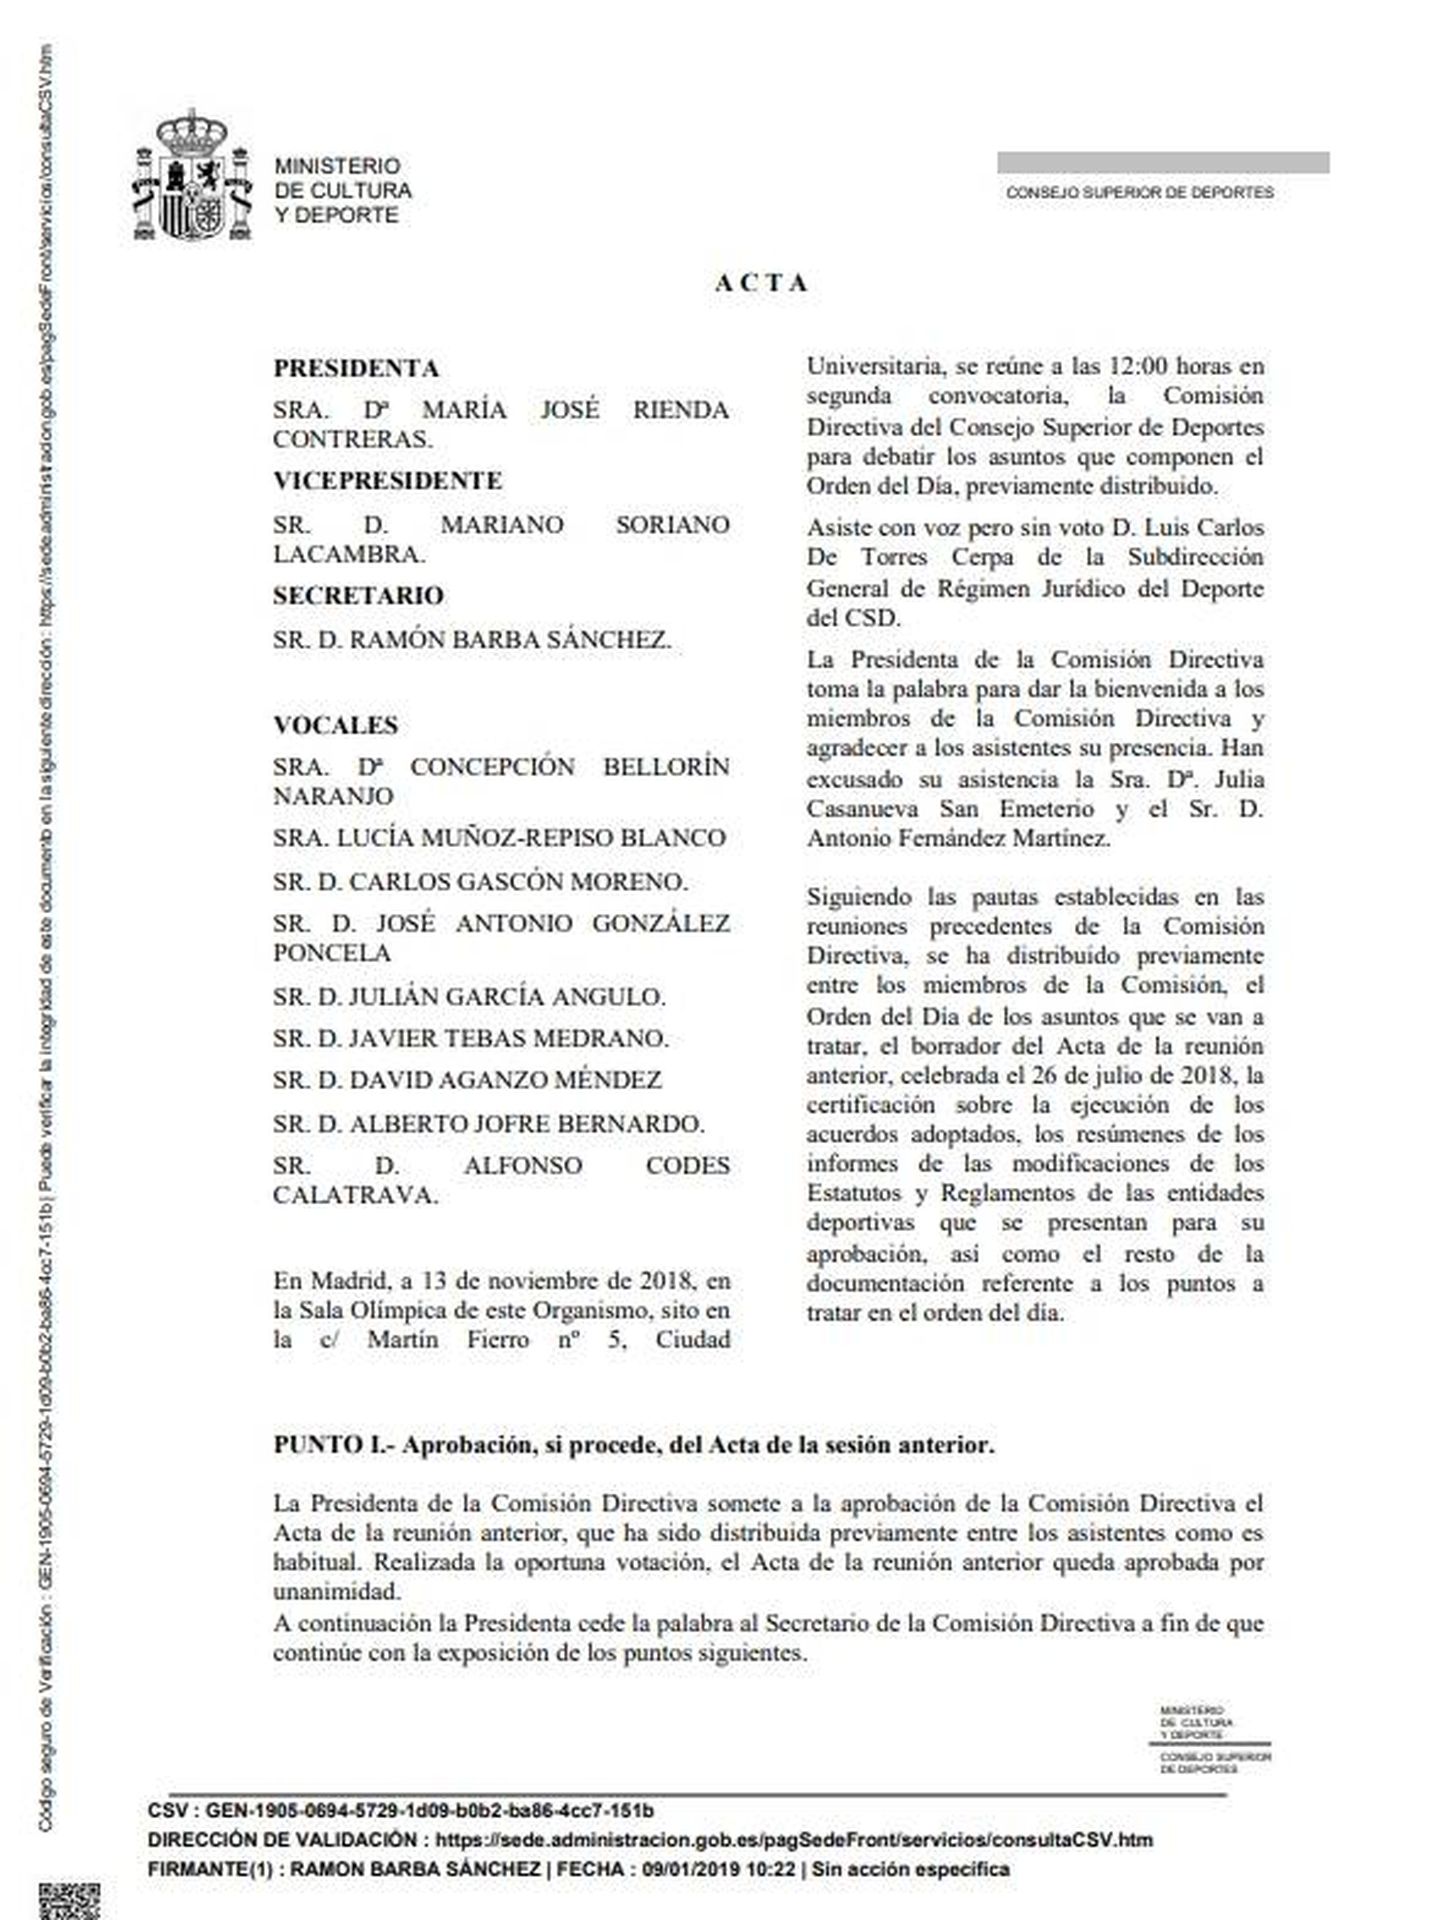 Acta de la Comisión Directiva del CSD (13/11/2018).